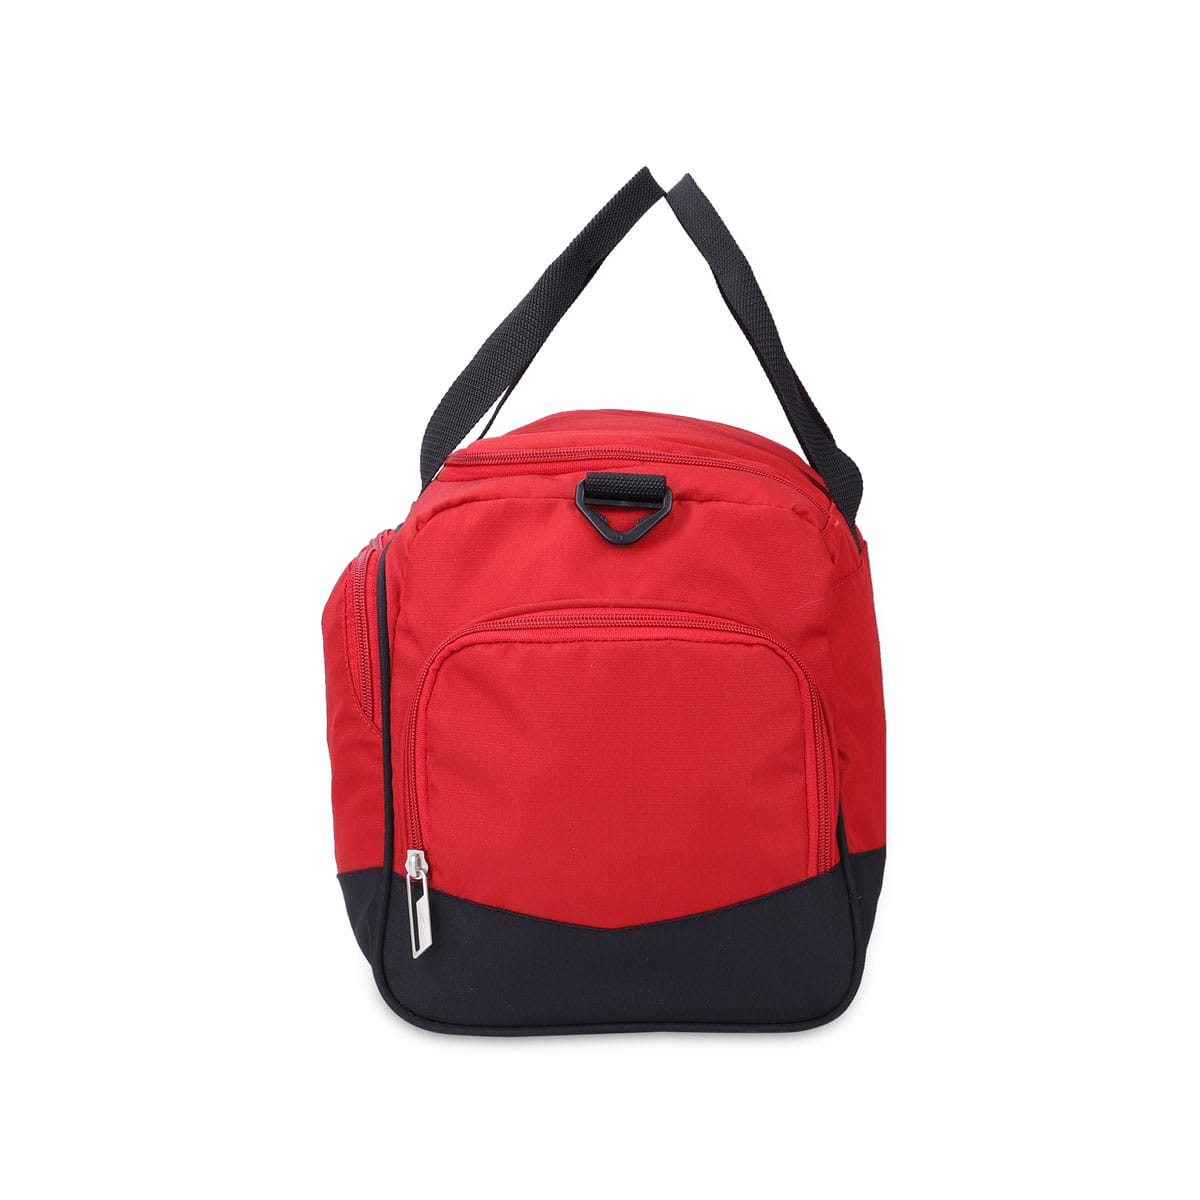 Black-Red | Protecta Rep Gym Bag-Main